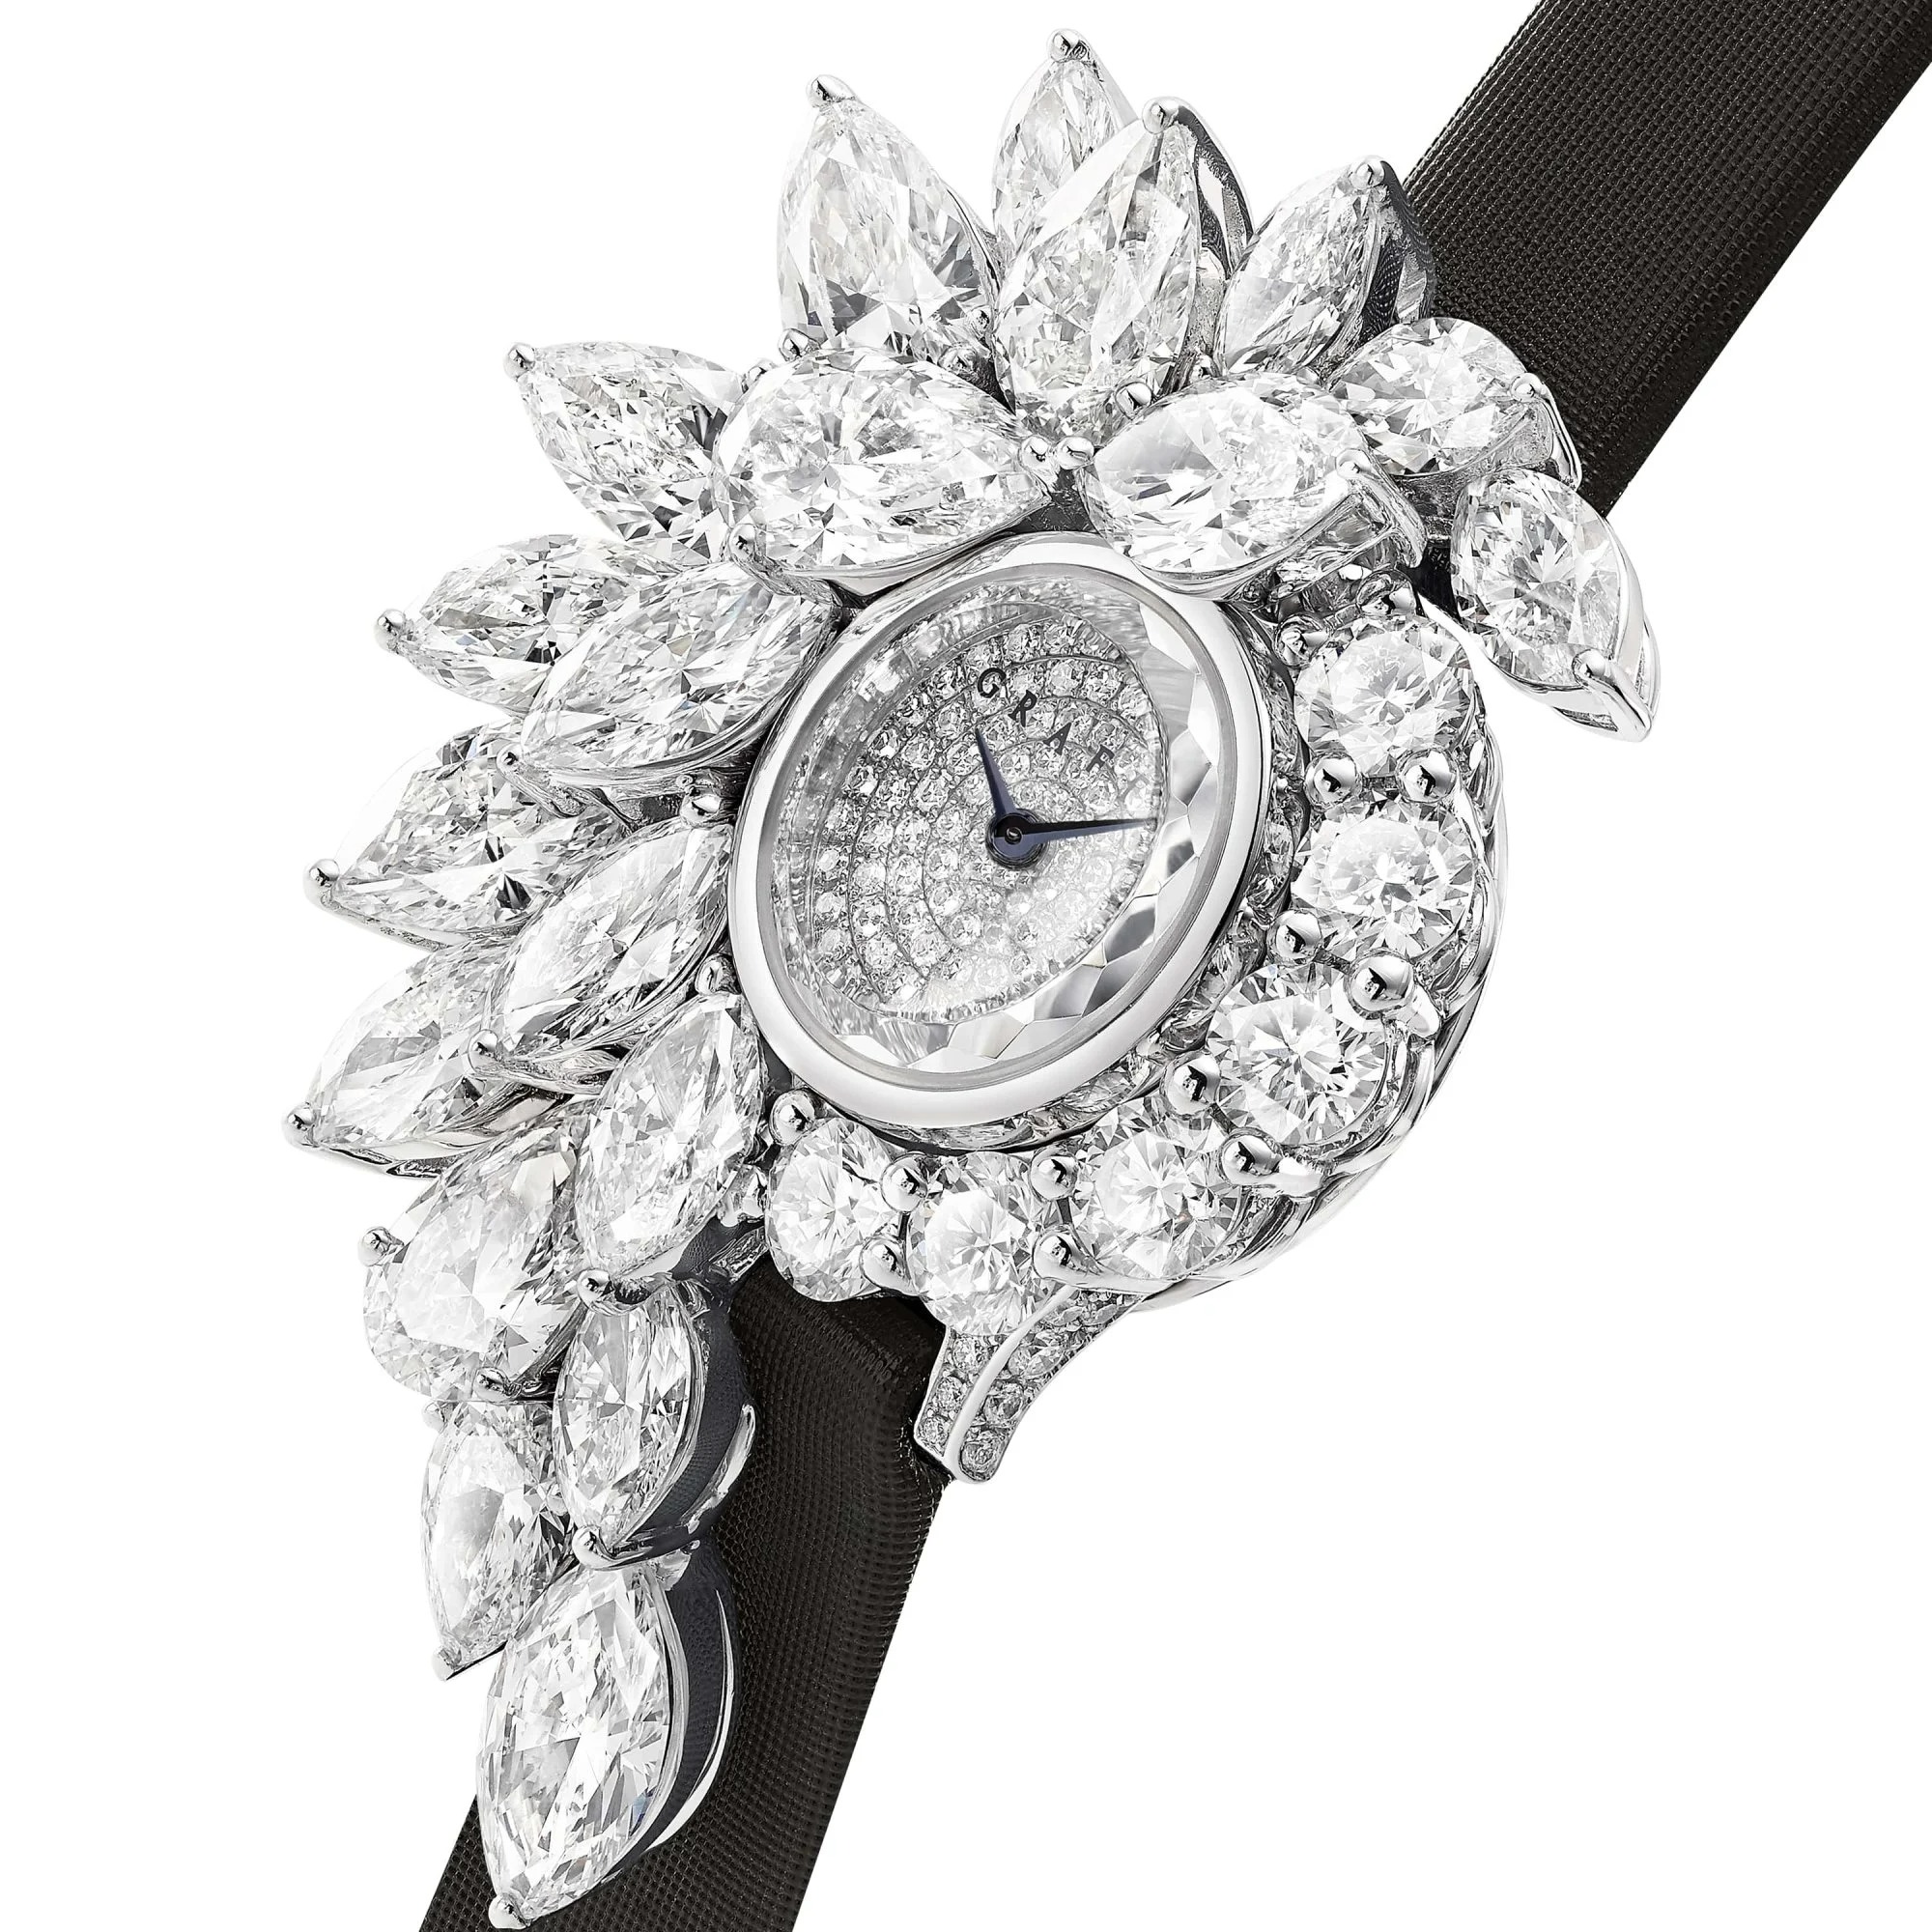 Đồng hồ Graff Abstract Diamond đính tổng cộng 13,58 carat kim cương